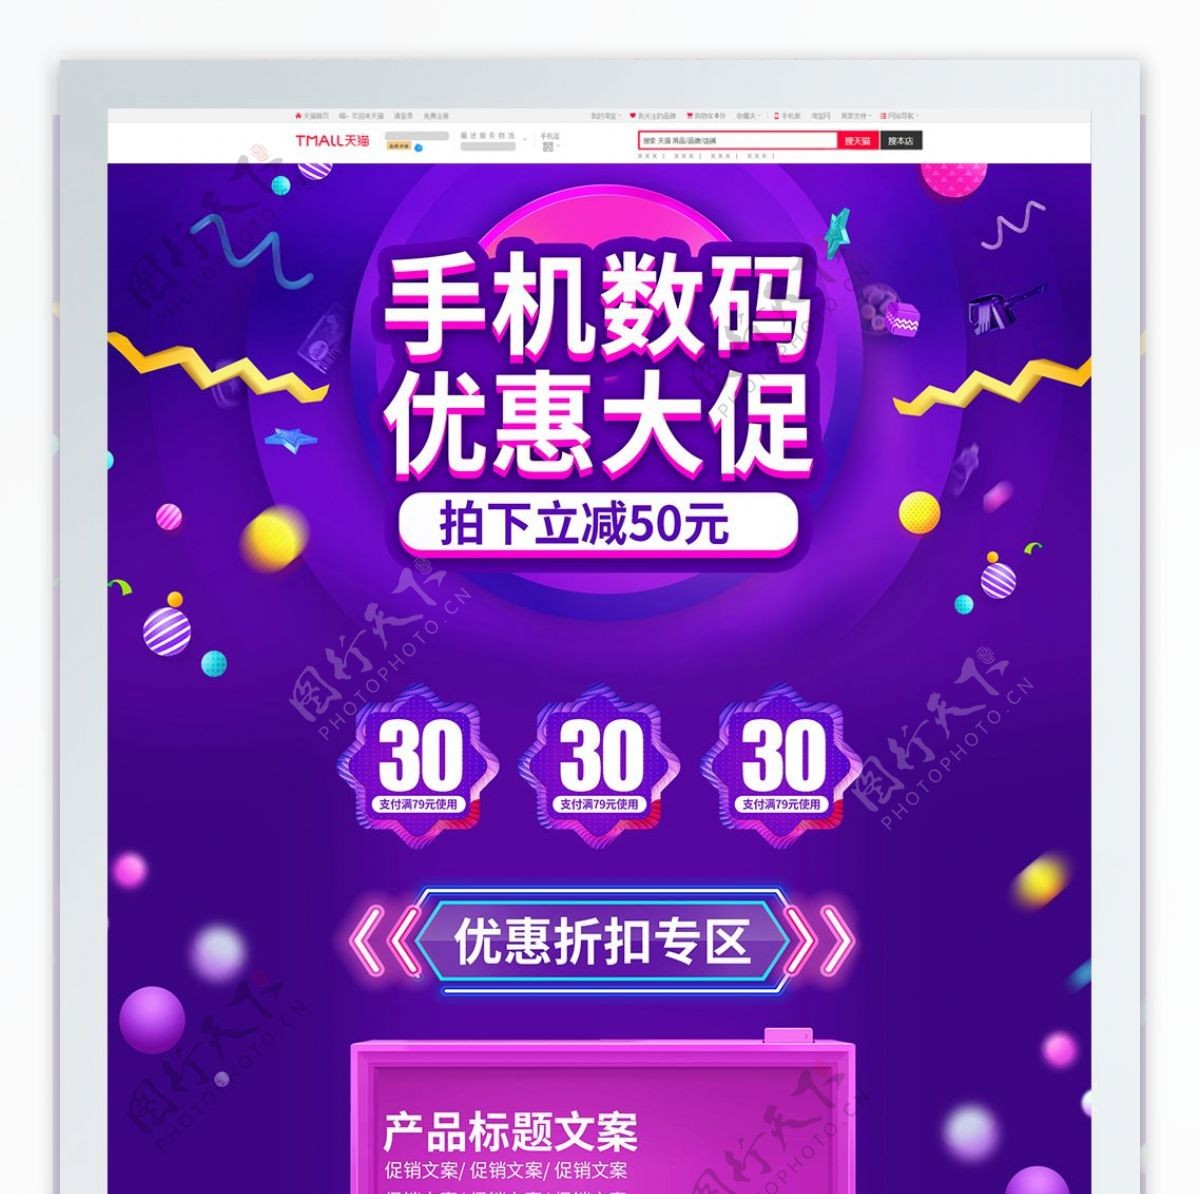 紫色炫酷欧普风手机数码配件首页促销模板